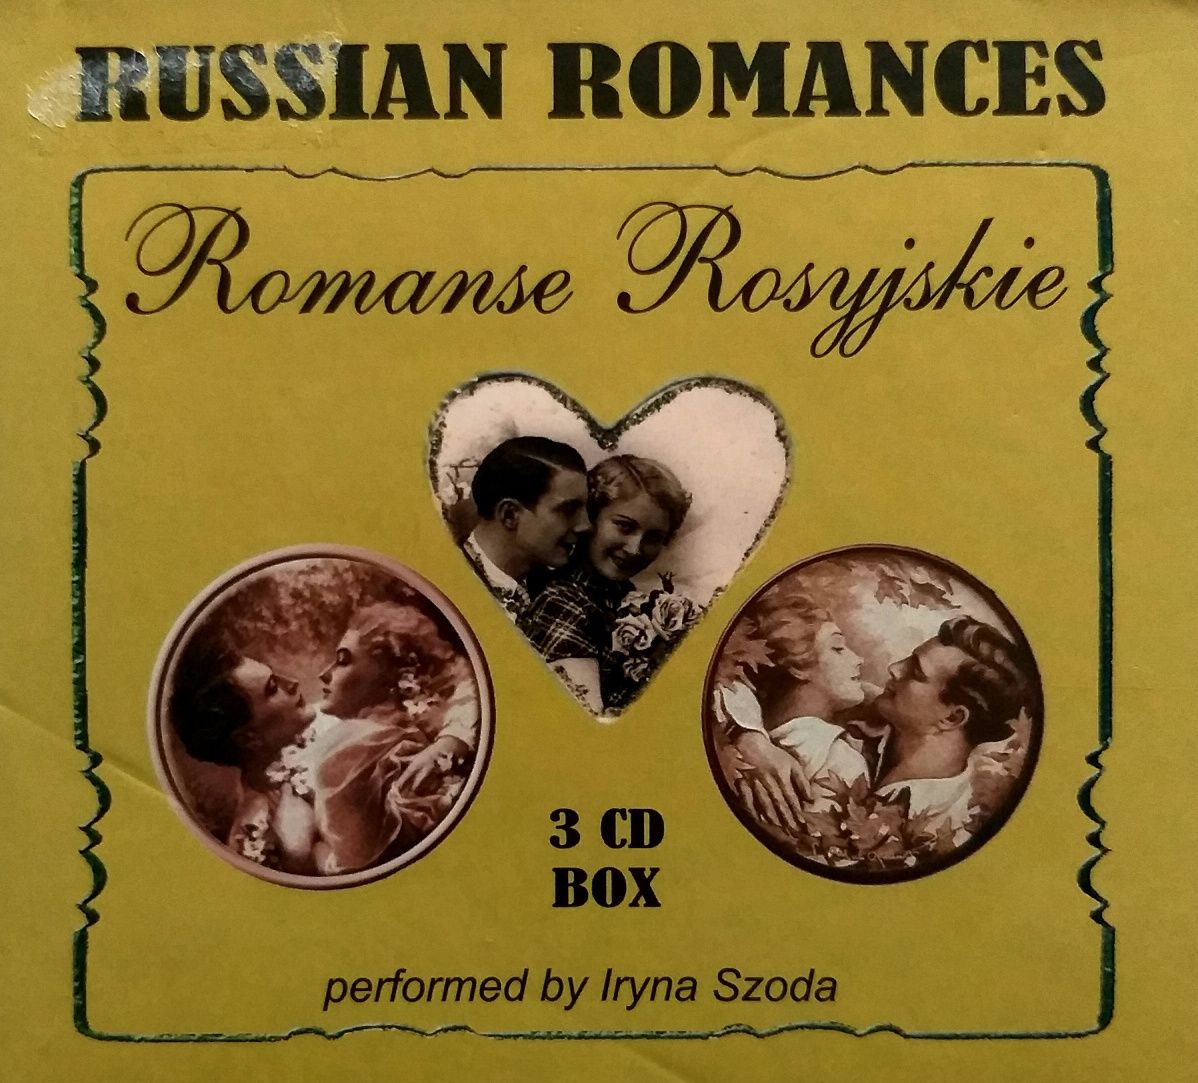 Russia Romances 3CDBox Performed by Iryna Szoda 2009 Romanse Rosyjskie